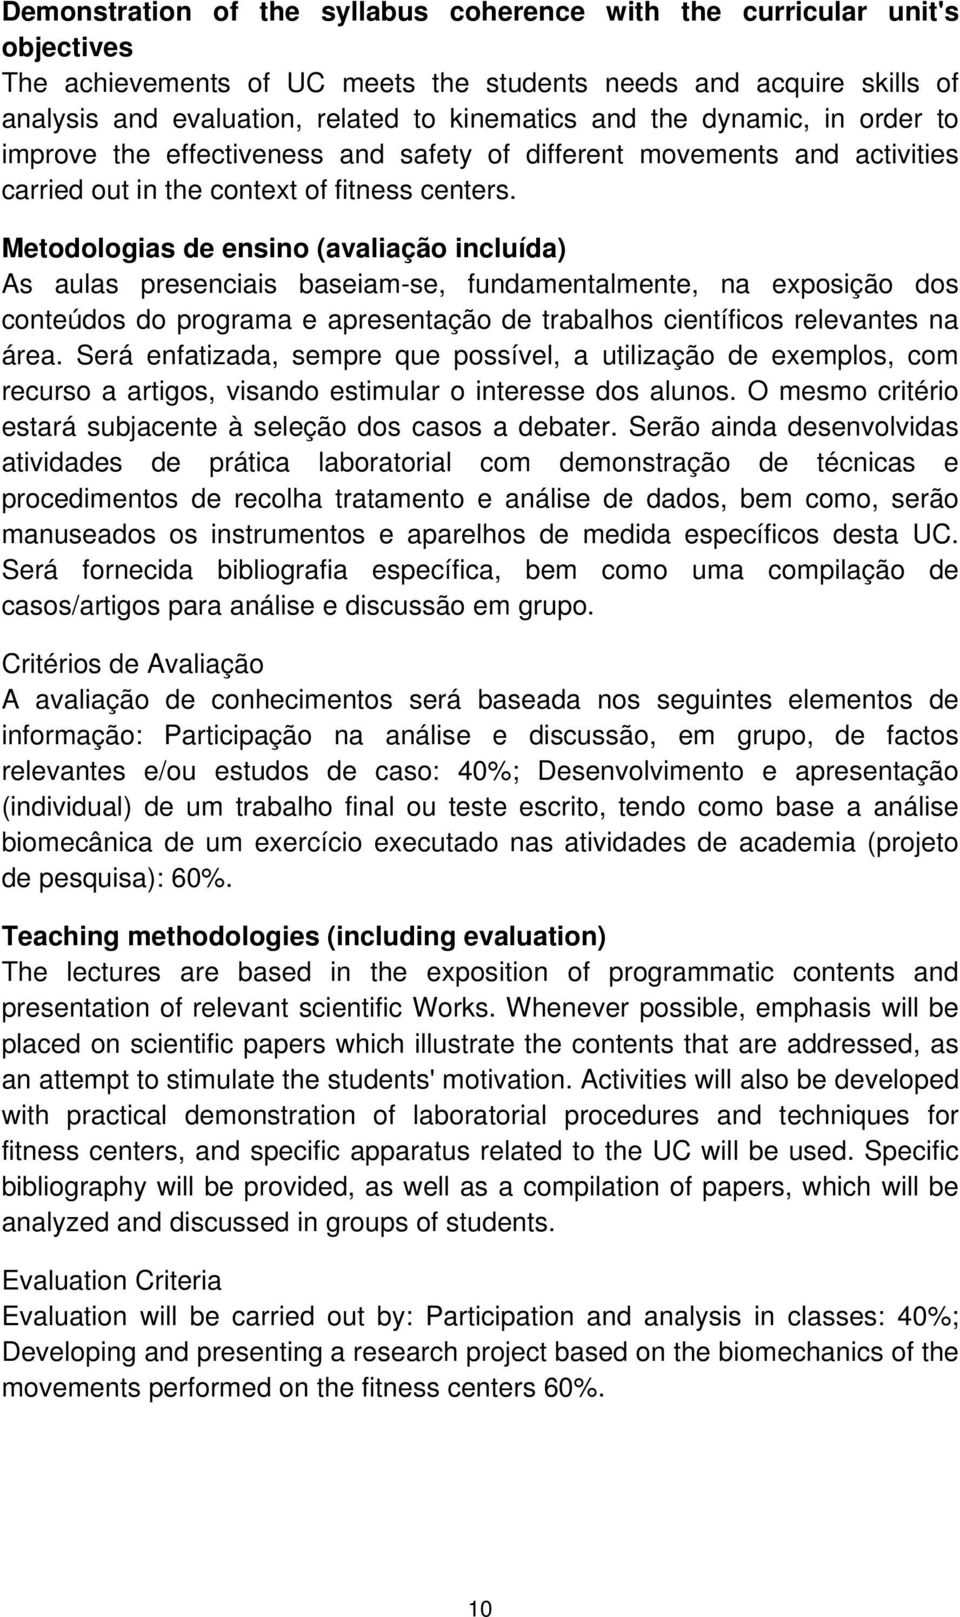 Metodologias de ensino (avaliação incluída) As aulas presenciais baseiam-se, fundamentalmente, na exposição dos conteúdos do programa e apresentação de trabalhos científicos relevantes na área.